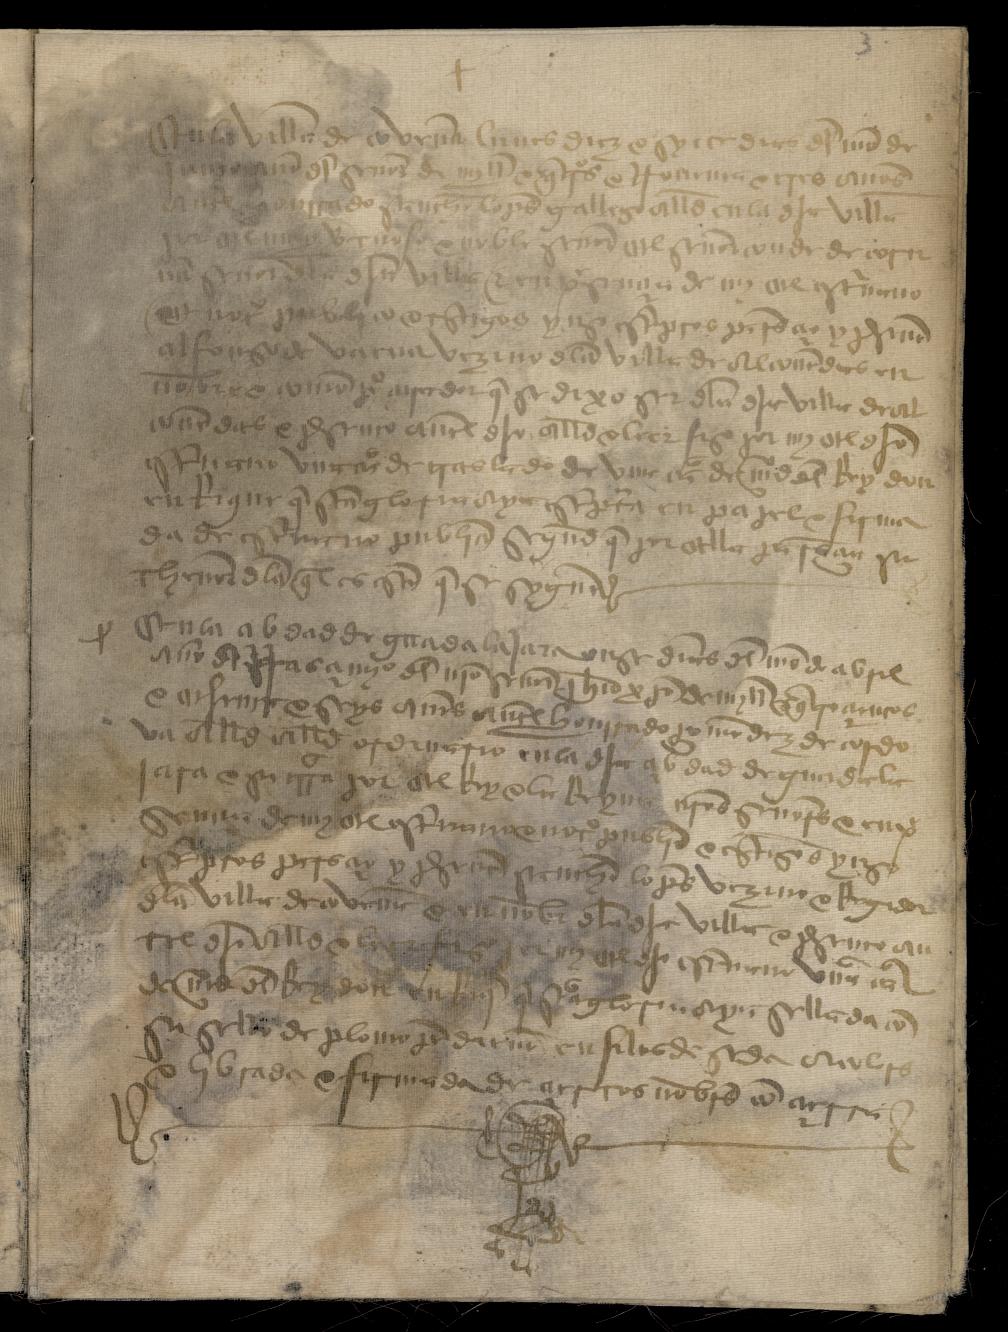 Copia de una carta de donacin de Enrique II otorgando a D. Pedro Gonzalez de Mendoza los lugares de Alcobendas, Barajas y Cobea